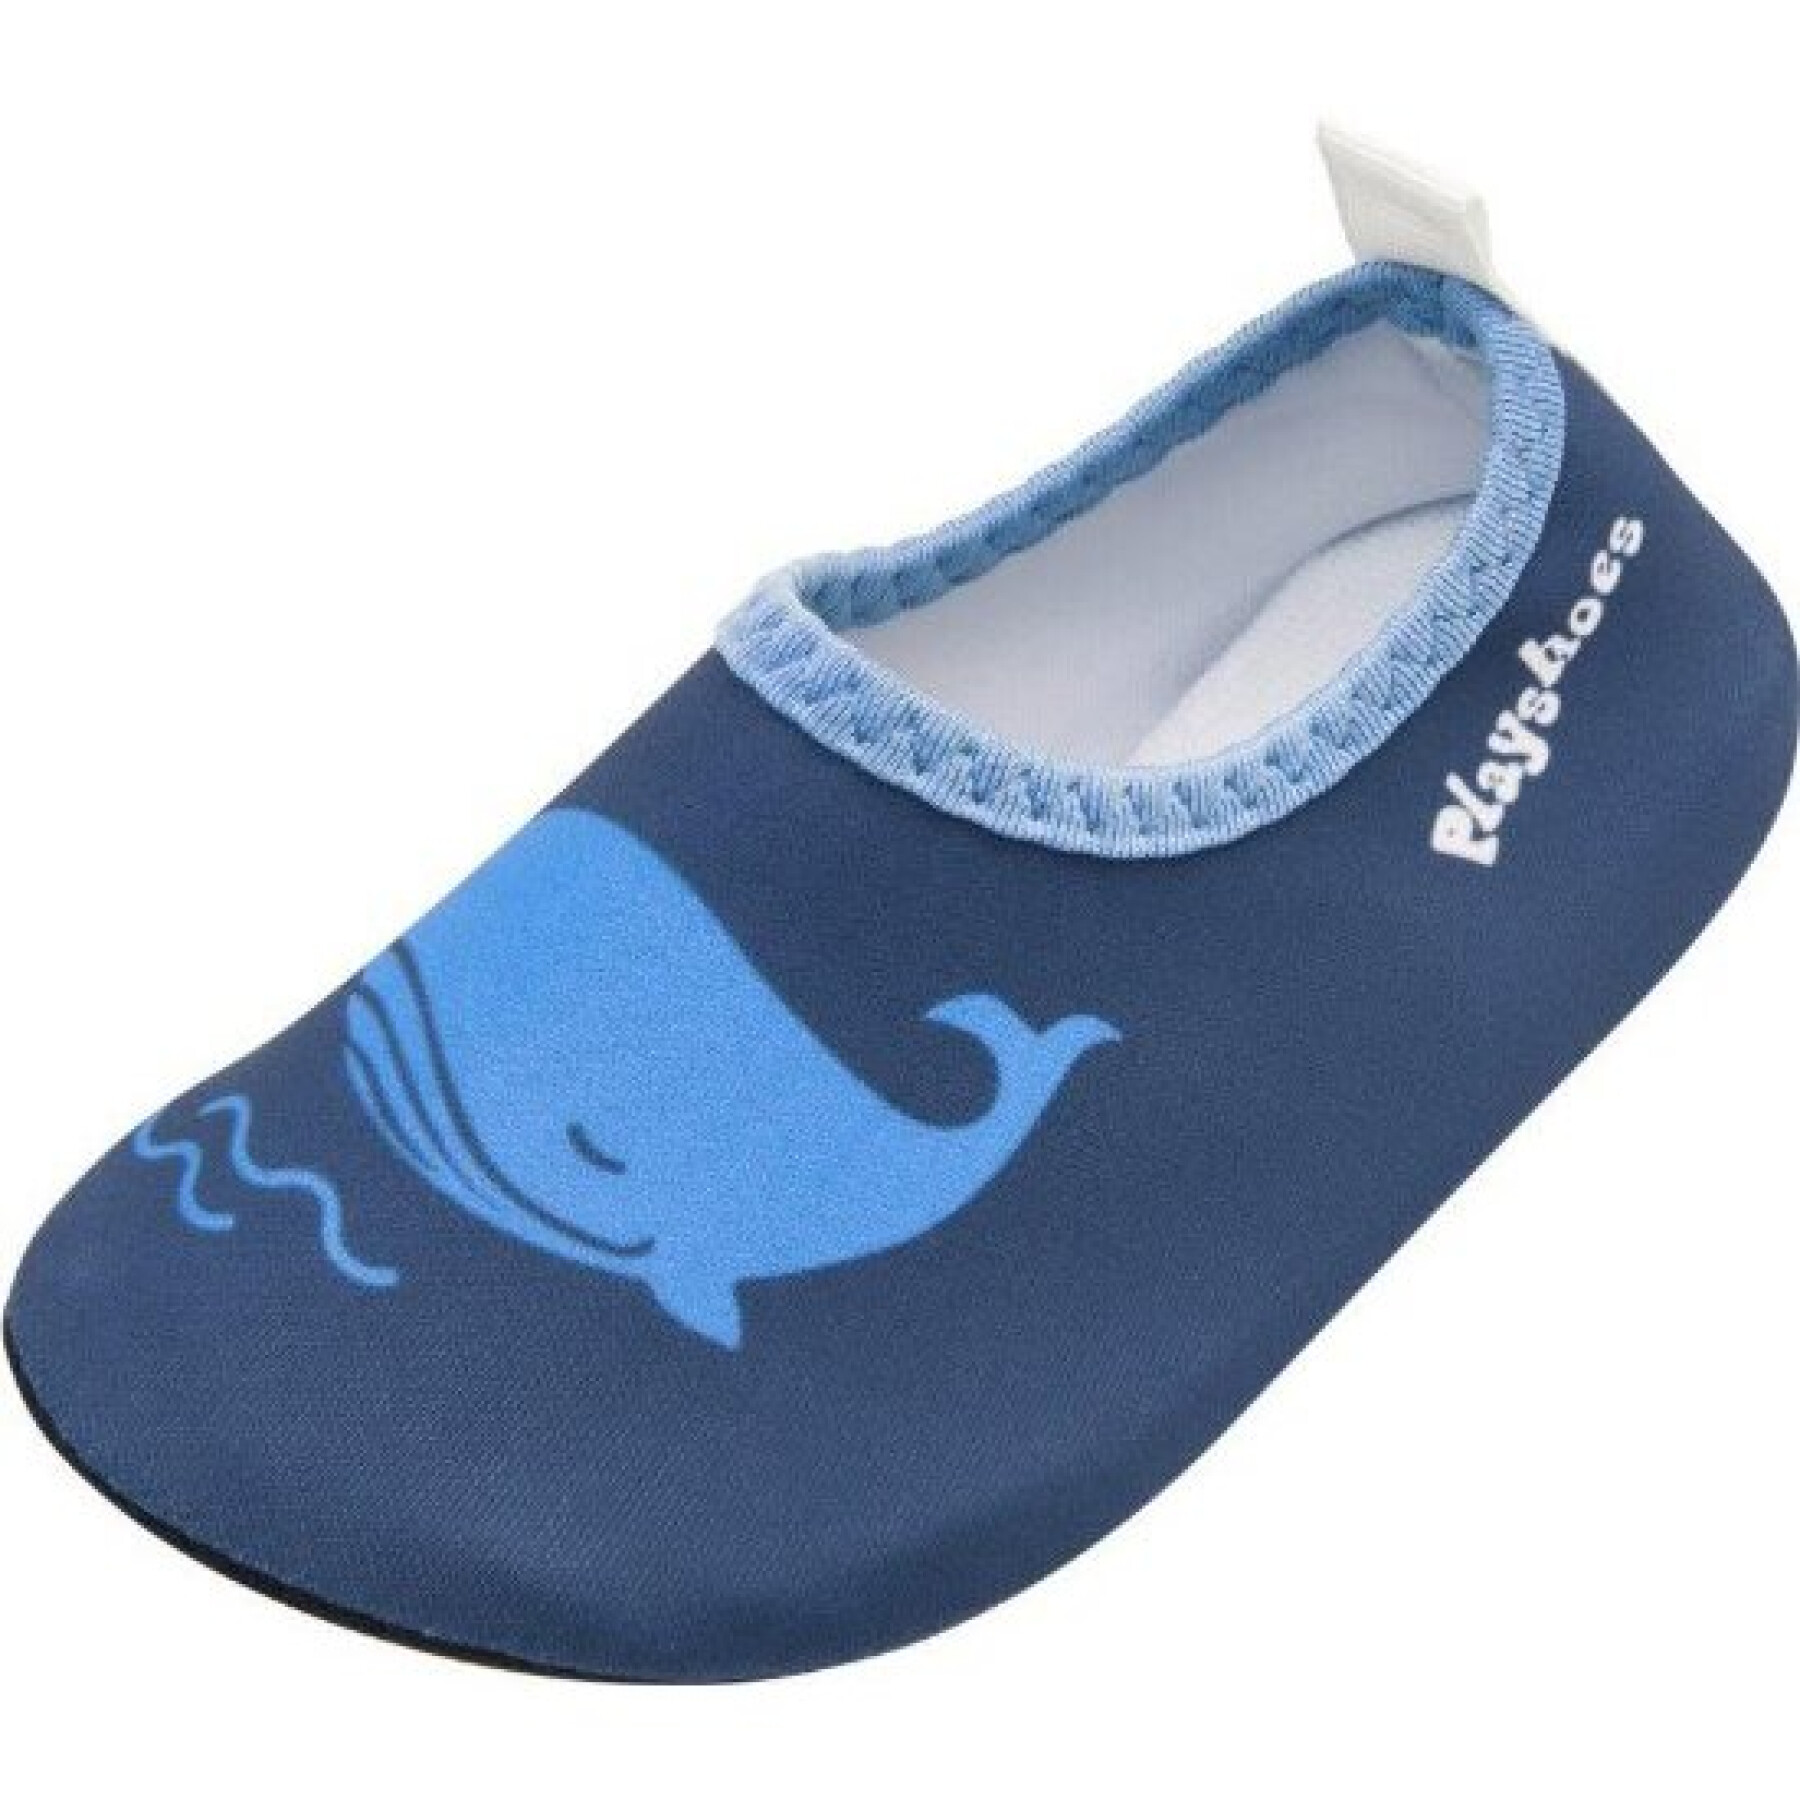 Wasserschuhe Kind Playshoes Whale